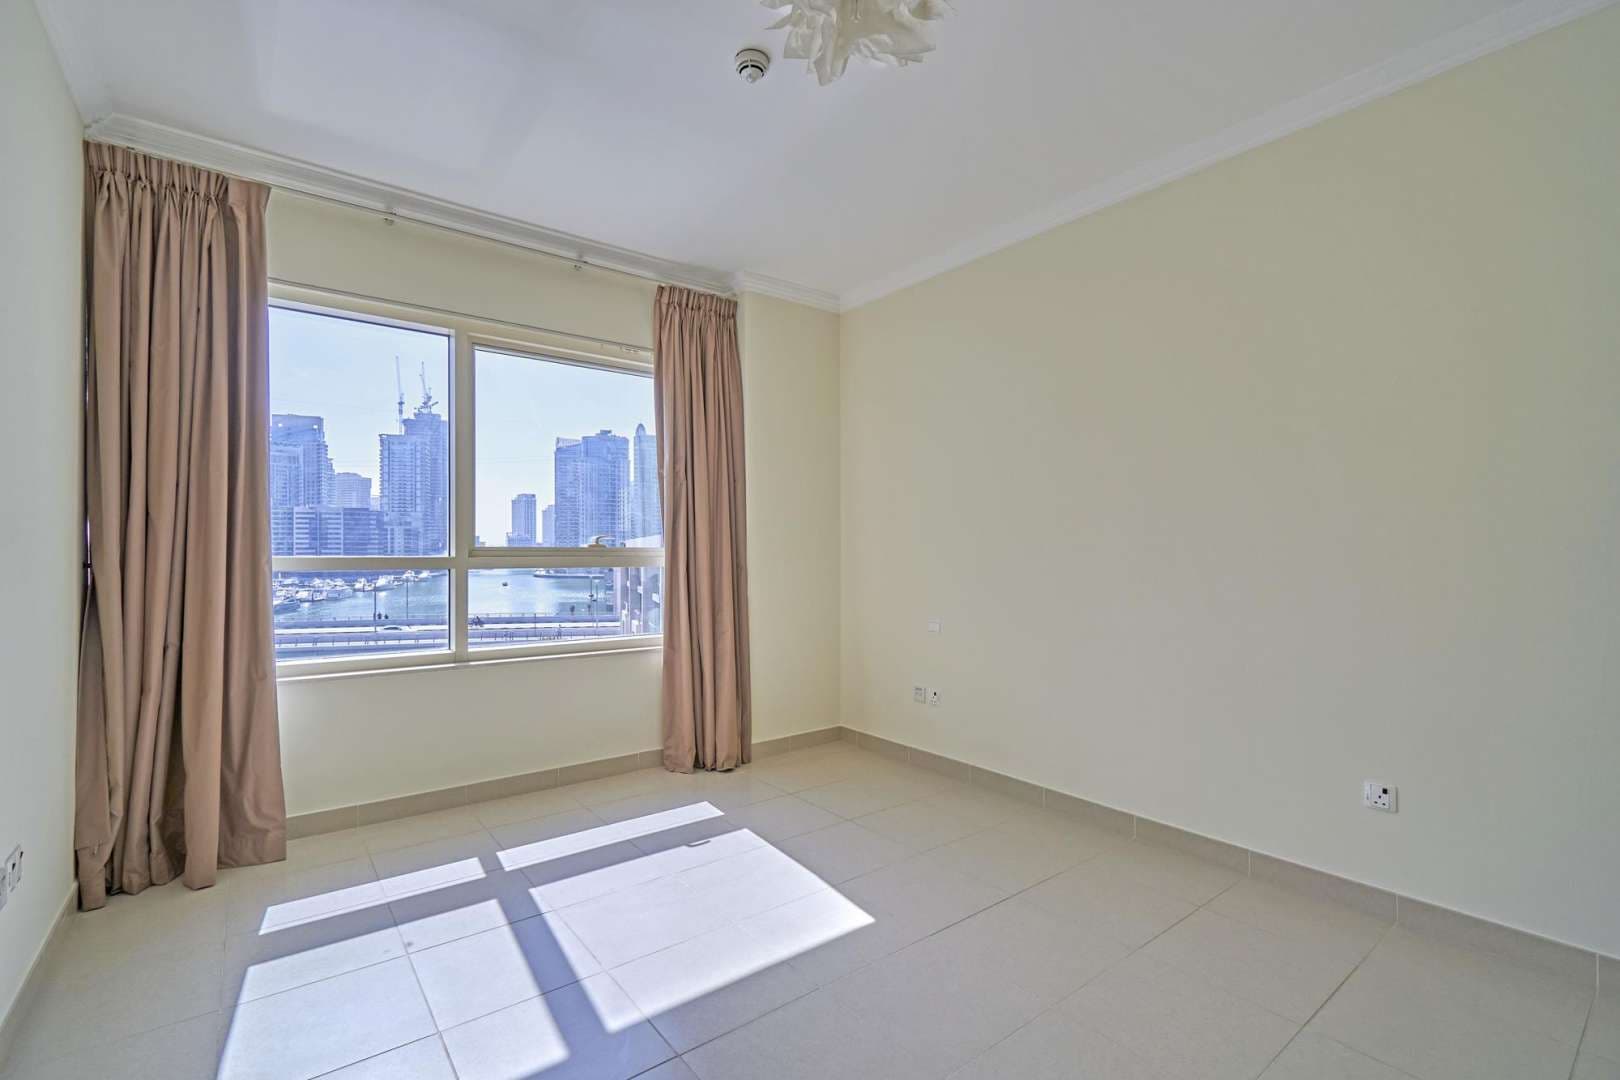 3 Bedroom Apartment For Rent Marina Quay West Lp07191 84ac9d8de5bb400.jpg